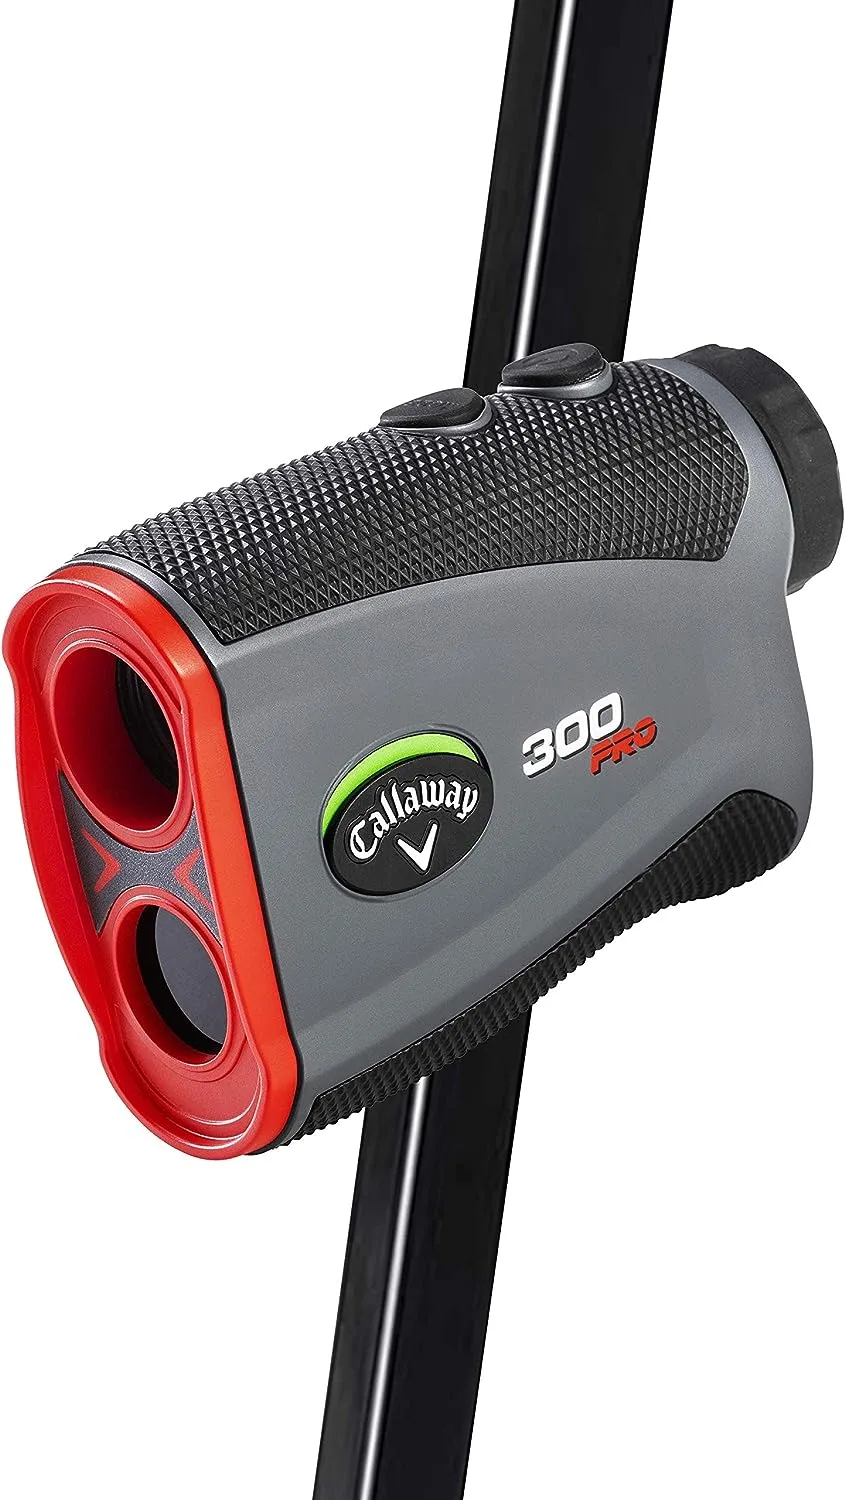 Callaway Golf 300 Slope Laser Rangefinder